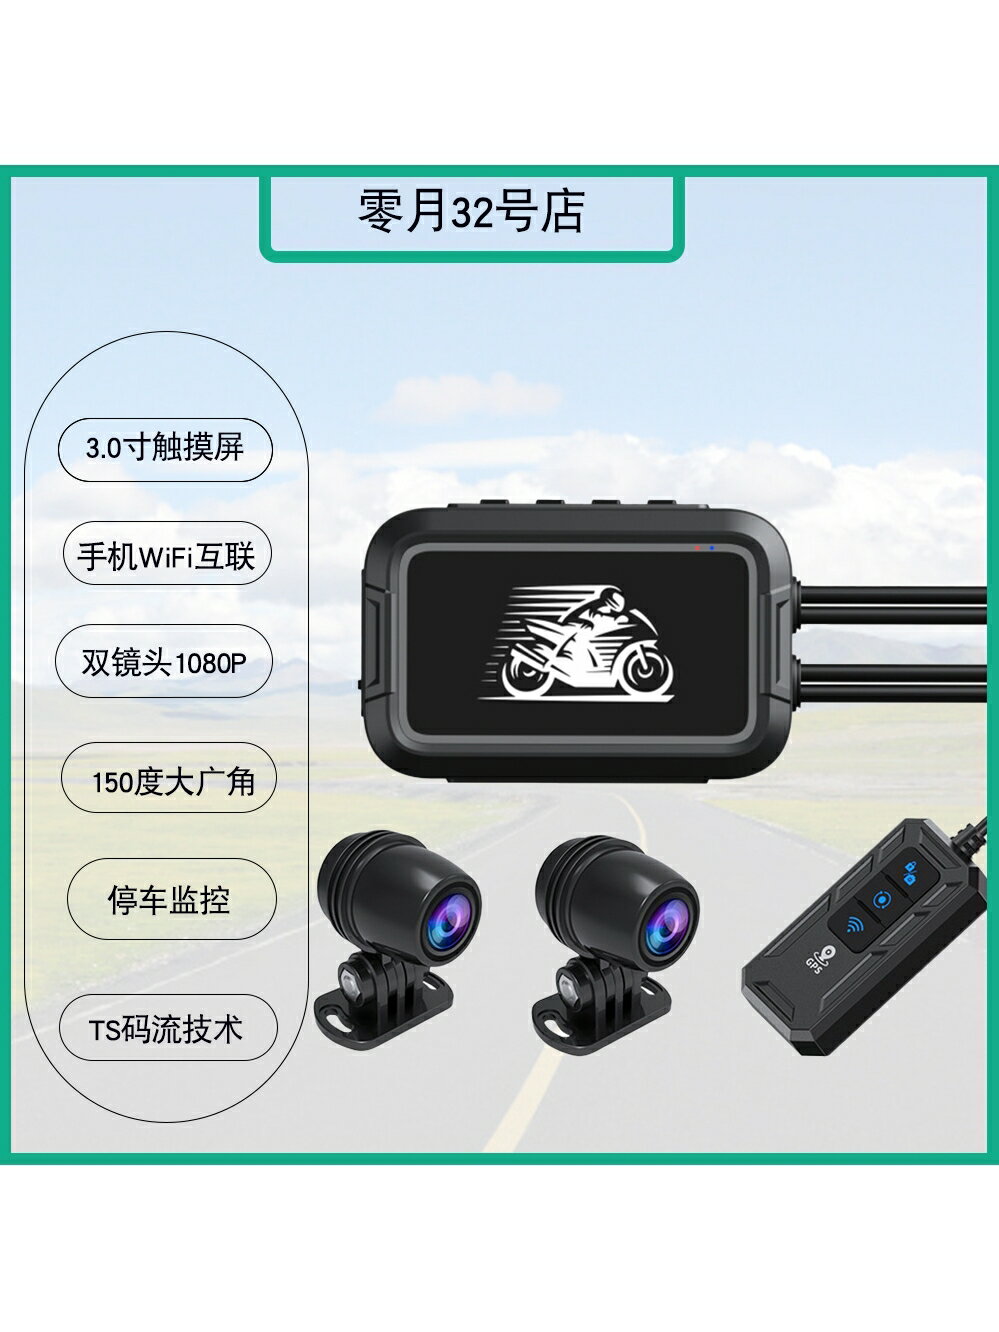 新款高清1080P摩托車電動車機車記錄儀防水WIFI雙鏡頭GPS停車監控